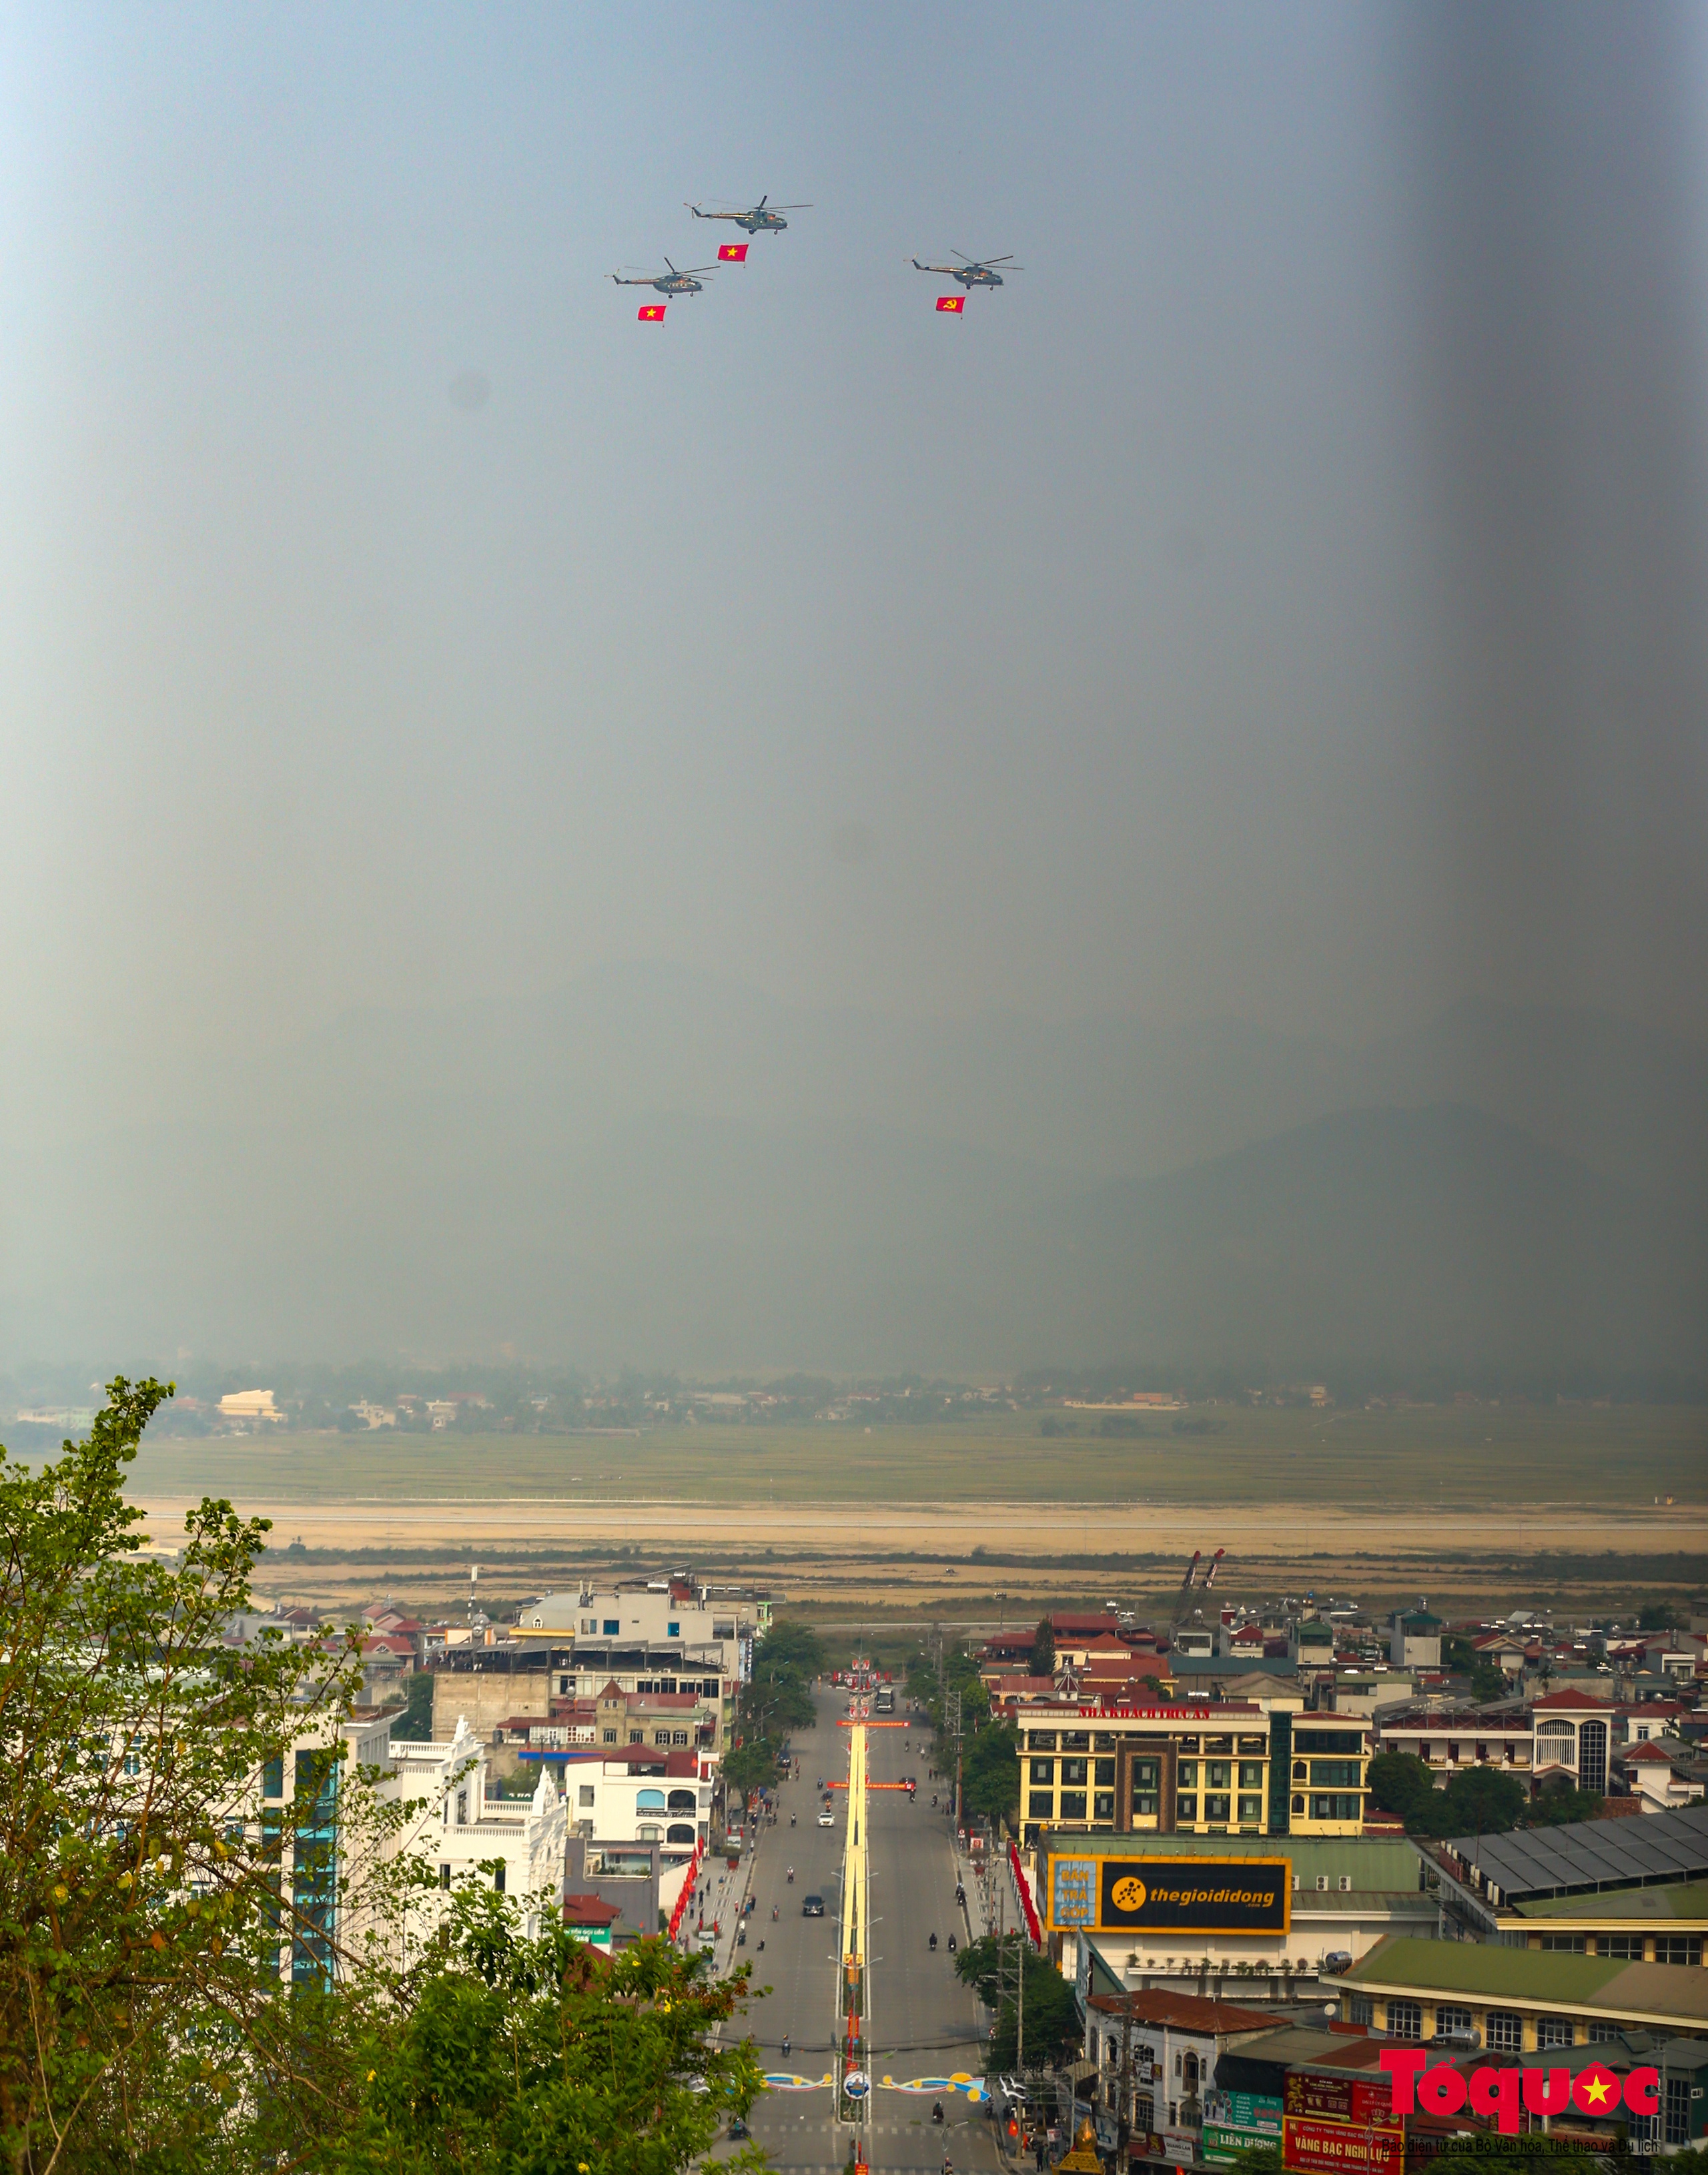 Ấn tượng với màn diễu binh của biên đội trực thăng bay trên bầu trời Điện Biên lịch sử - Ảnh 14.